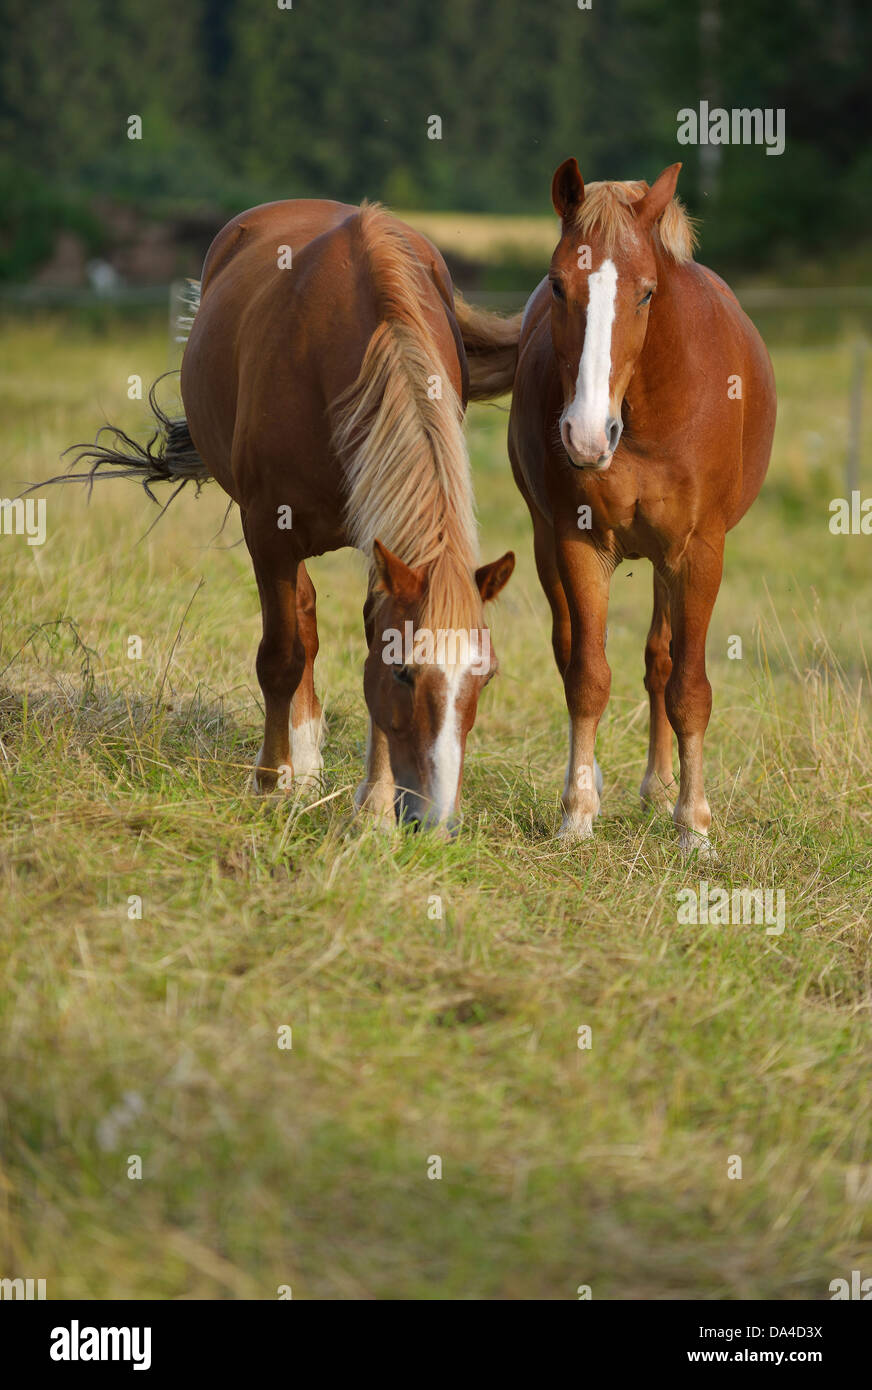 Domestic horses (Equus ferus caballus), Munsö, Sweden Stock Photo